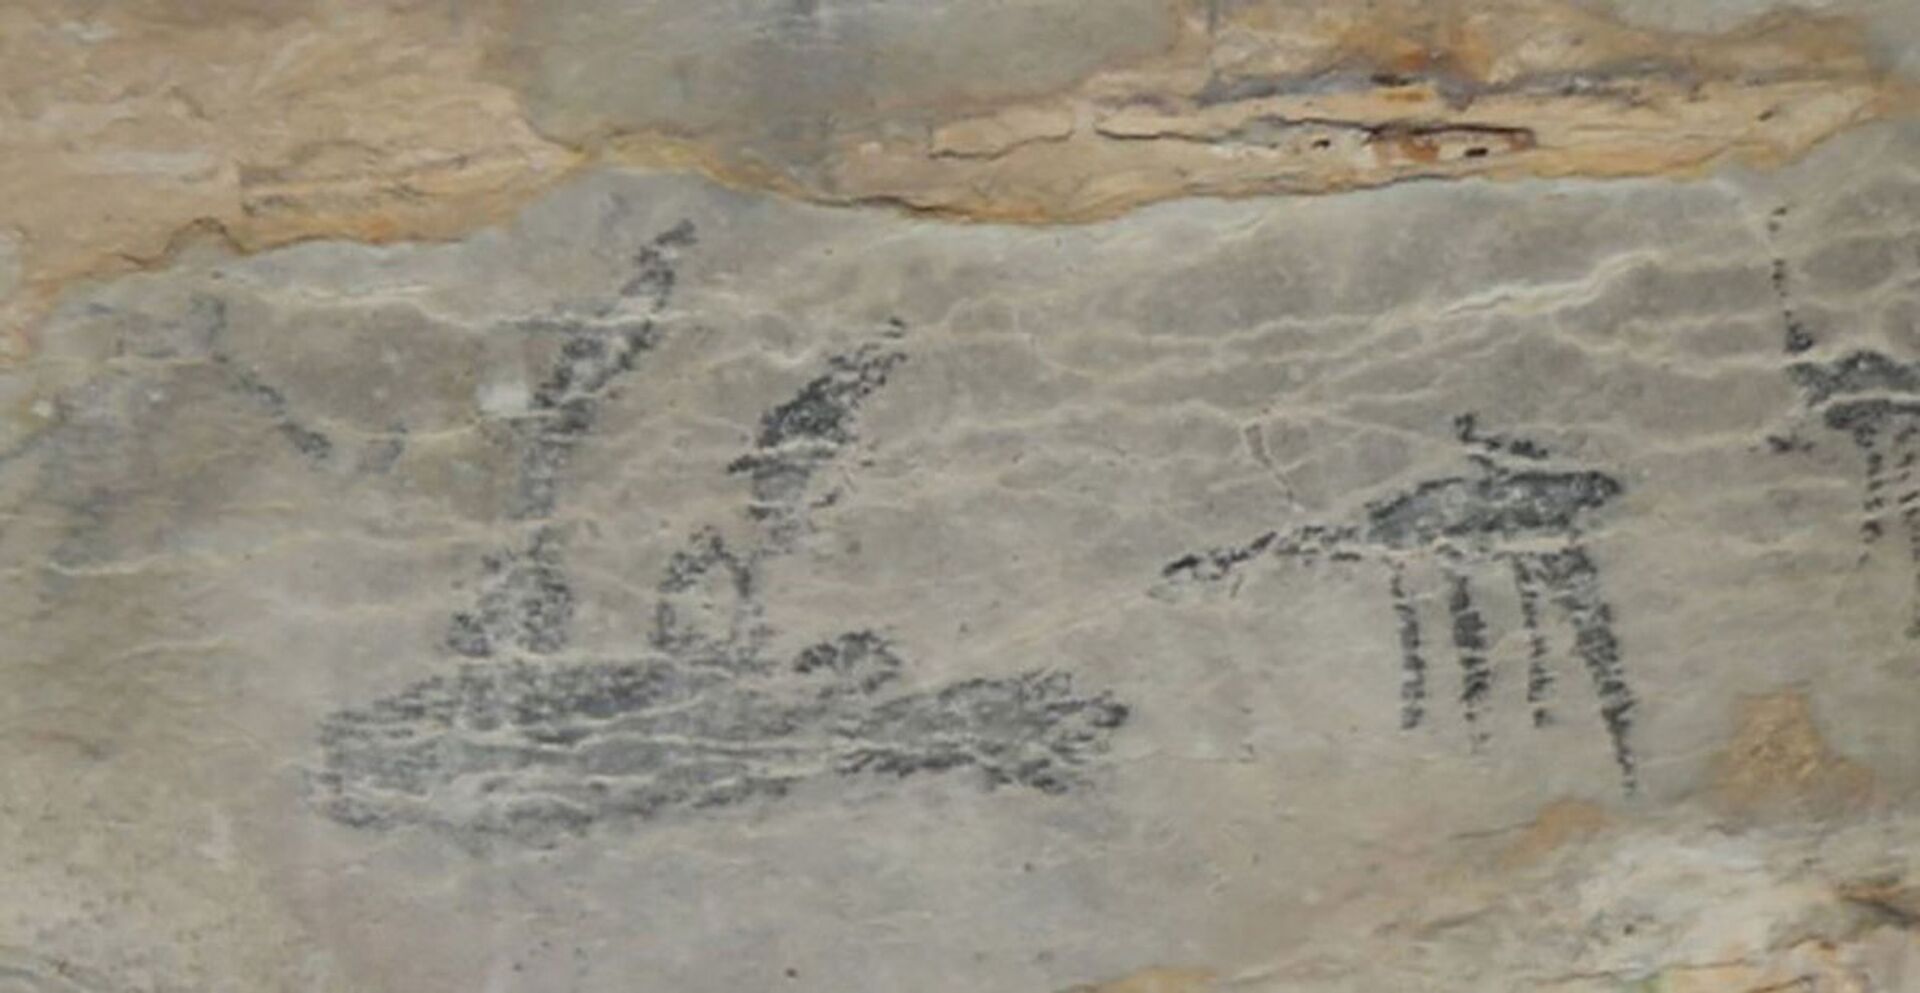 Descoberta tumba de 6 mil anos na península Arábica com evidências inéditas de cão doméstico (FOTO) - Sputnik Brasil, 1920, 13.04.2021